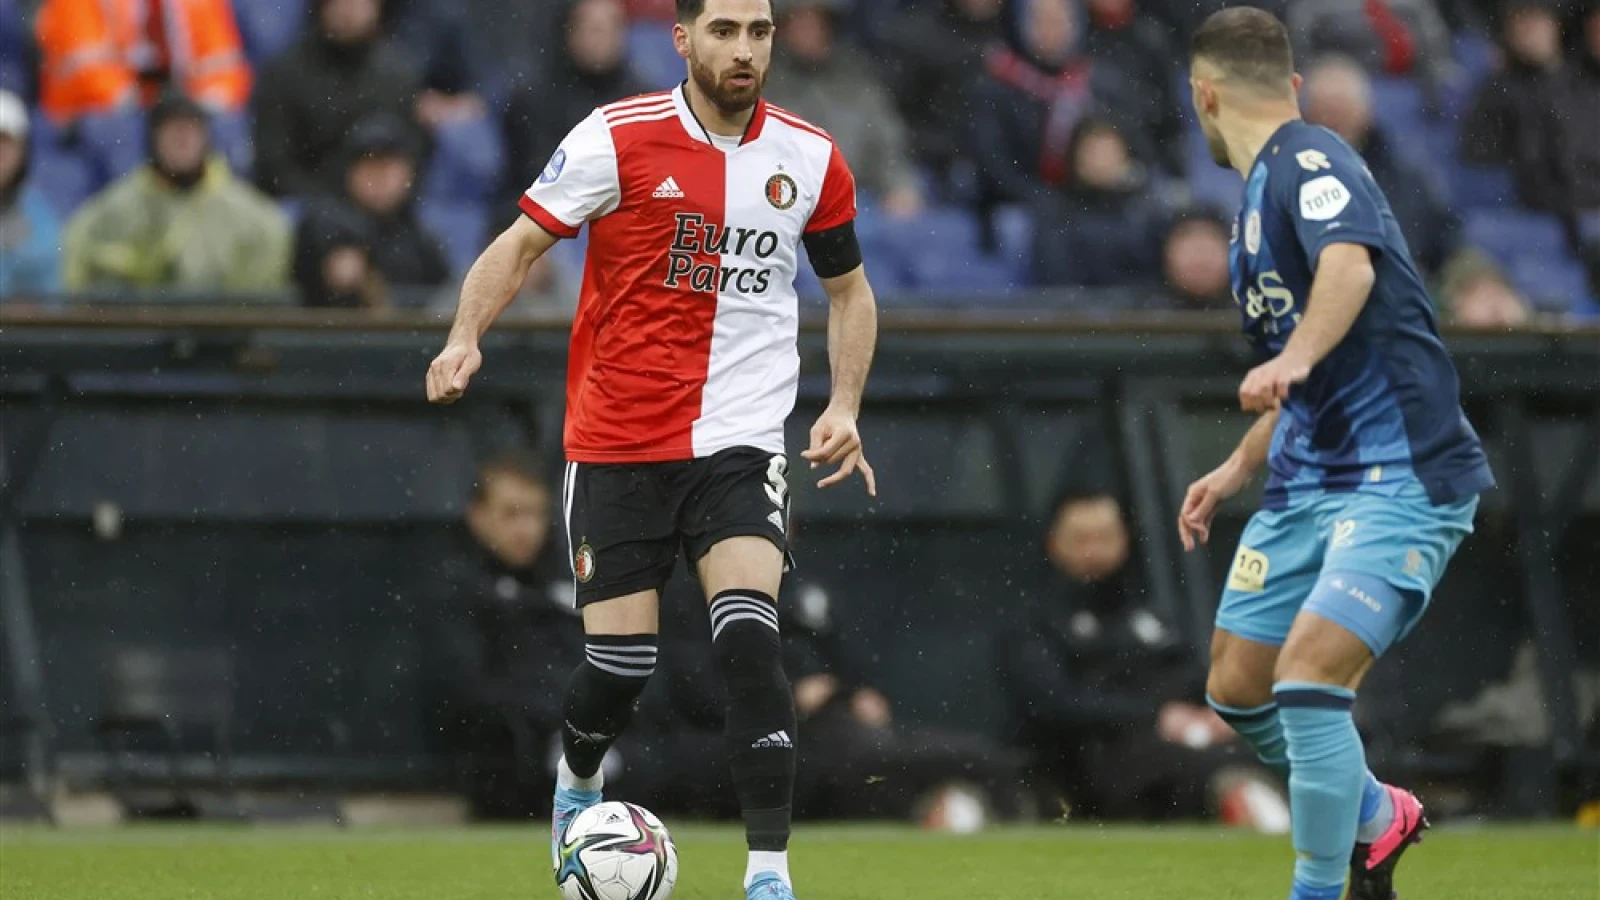 LIVE | Feyenoord - Sparta 4-0 | Einde wedstrijd